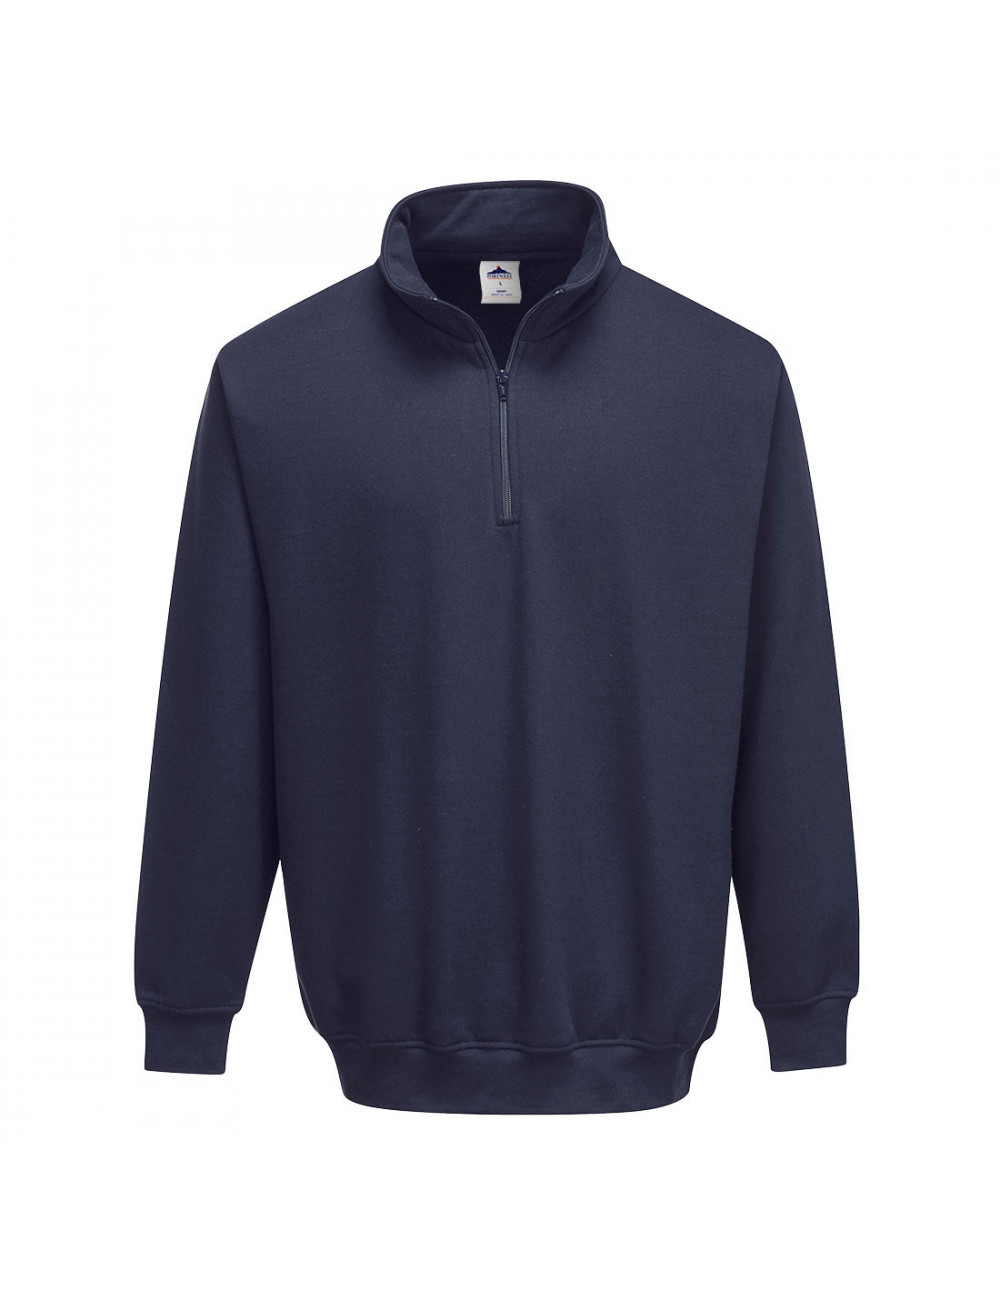 Sorrento-Sweatshirt mit Reißverschluss, Marineblau, Portwest